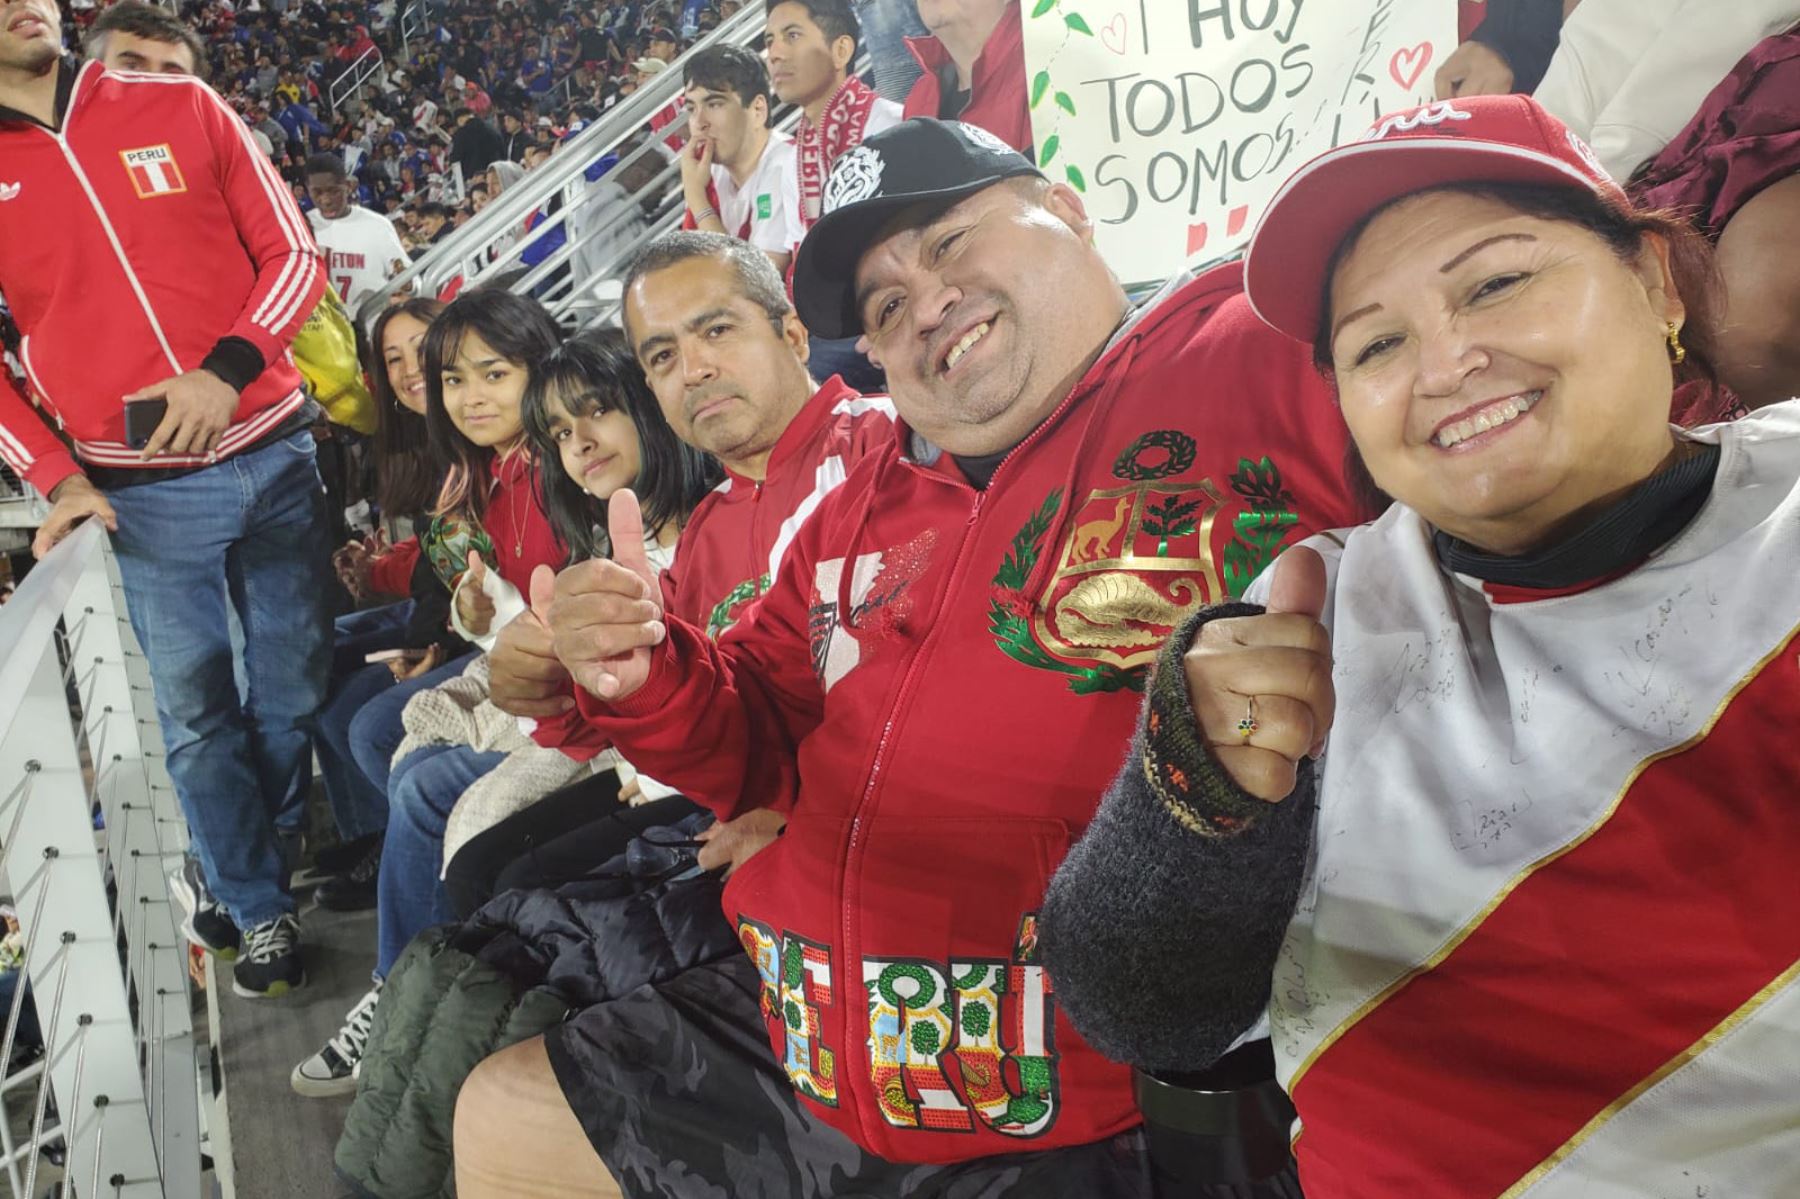 Hinchas peruanos alientan a la selección peruana en Washington DC.
Foto cortesía; Daniel Cerro